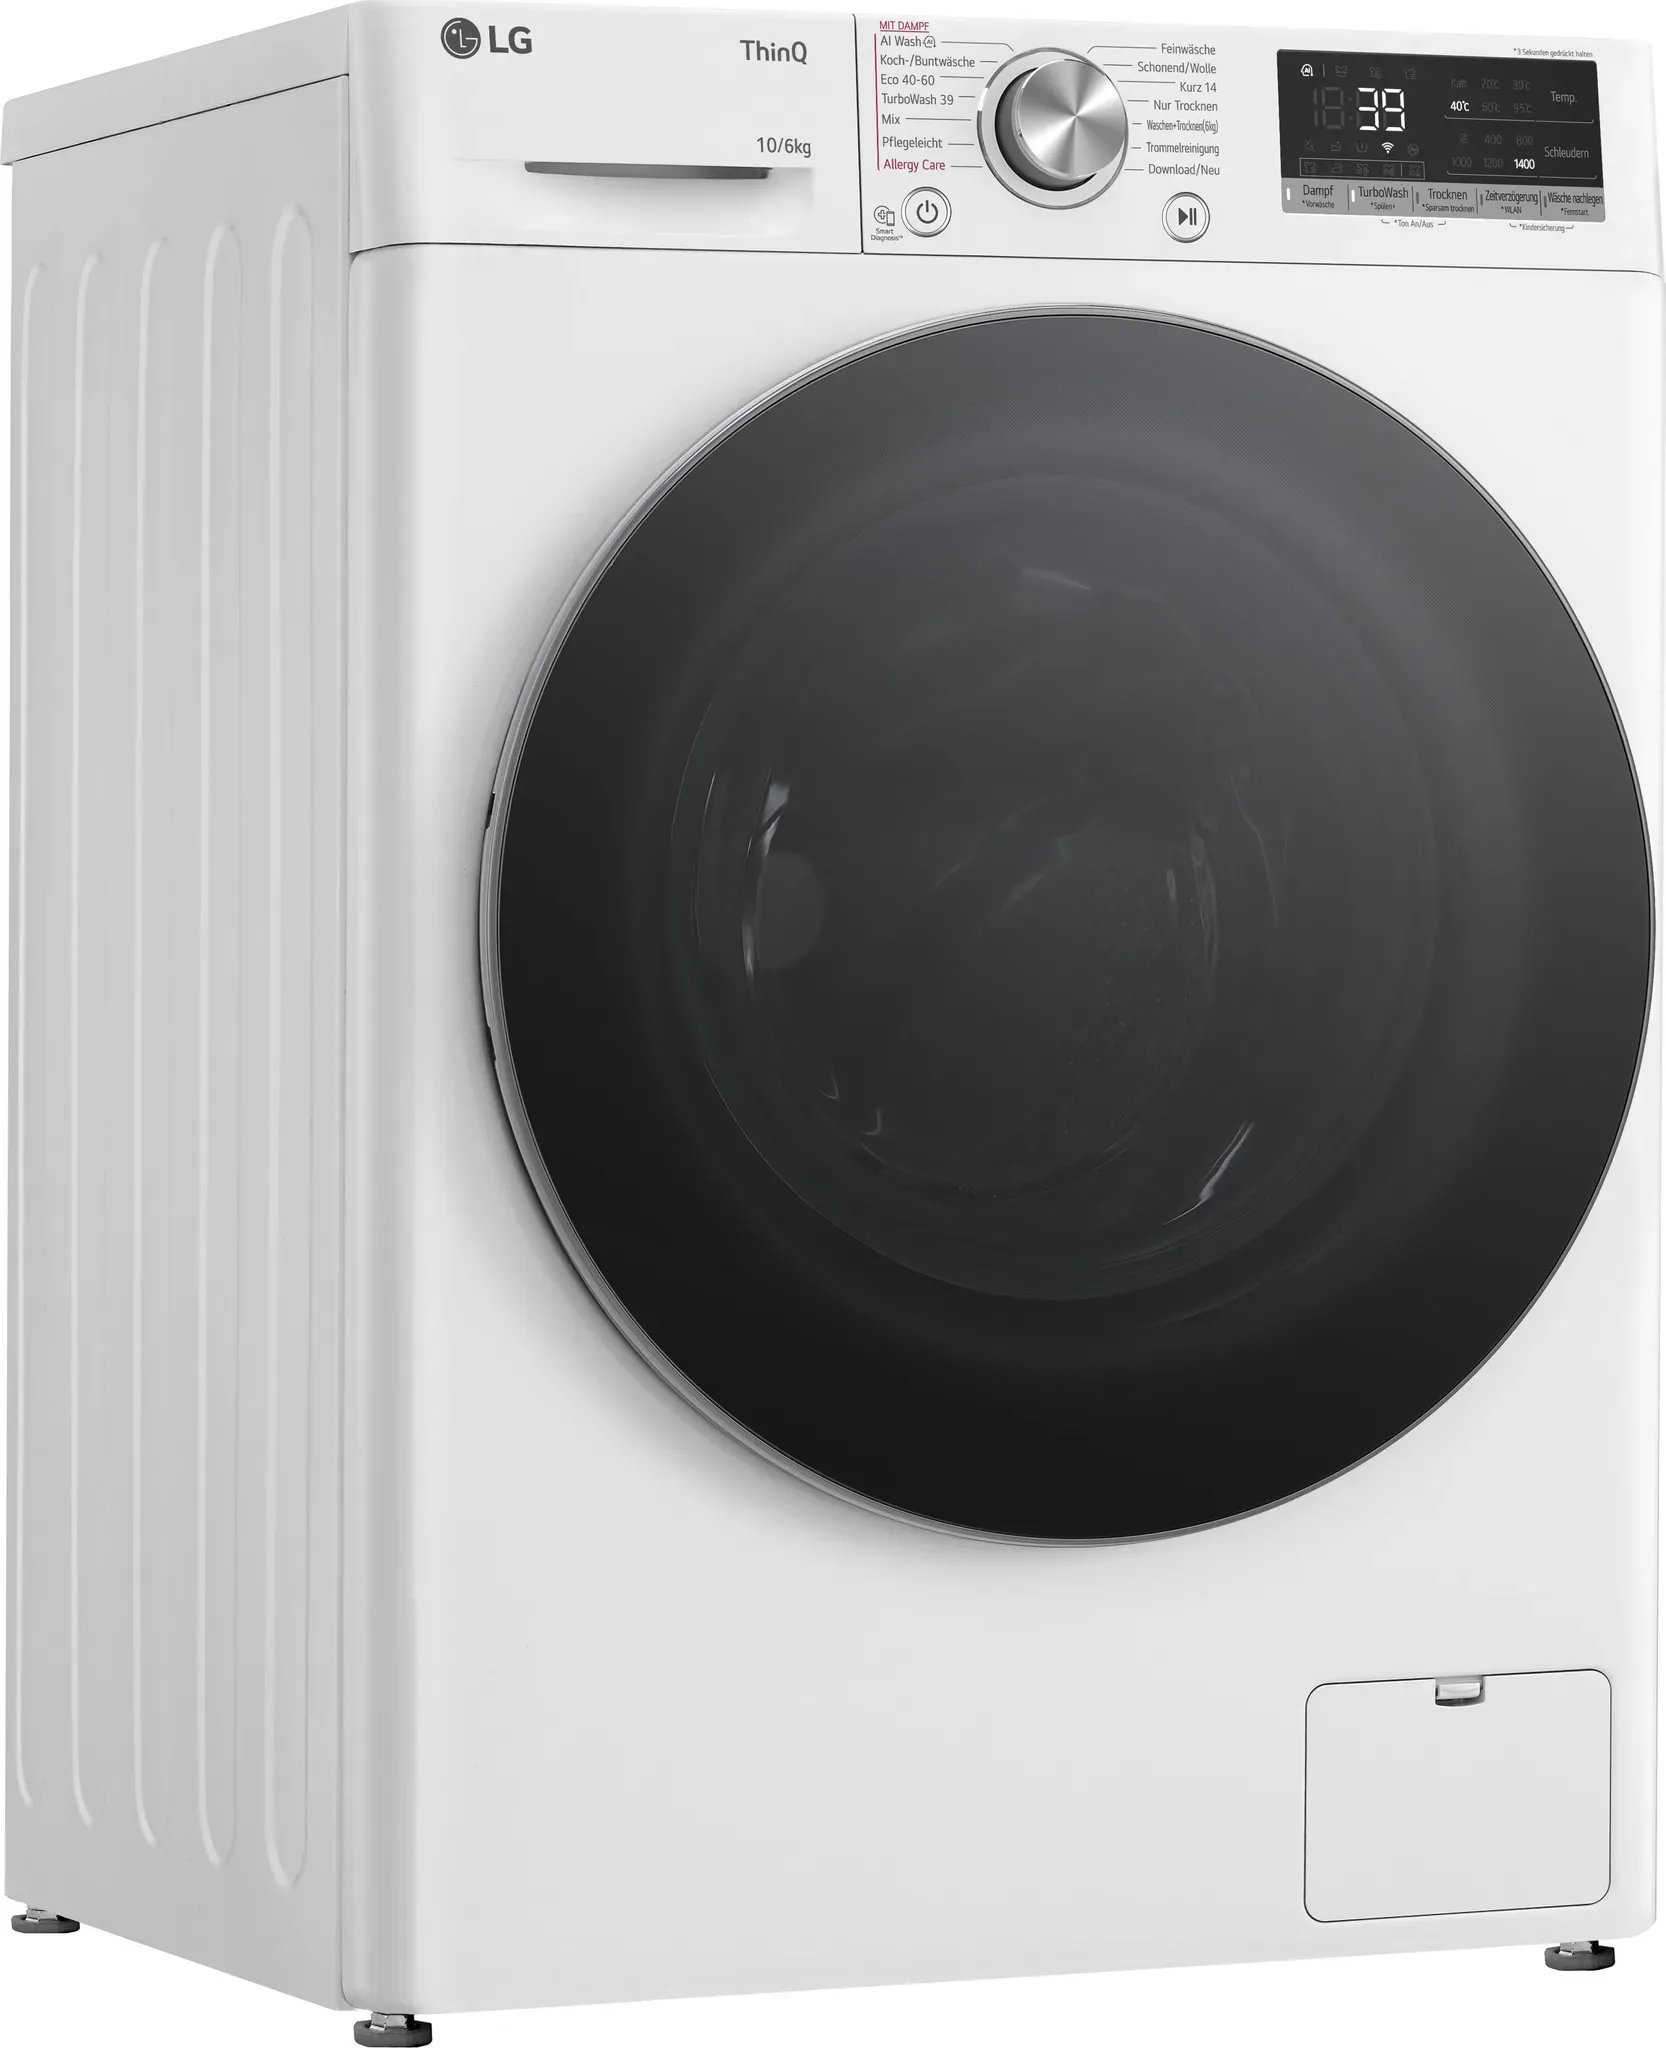 D (A bis G) LG Waschtrockner "W4WR70X61" weiß Waschtrockner Bestseller